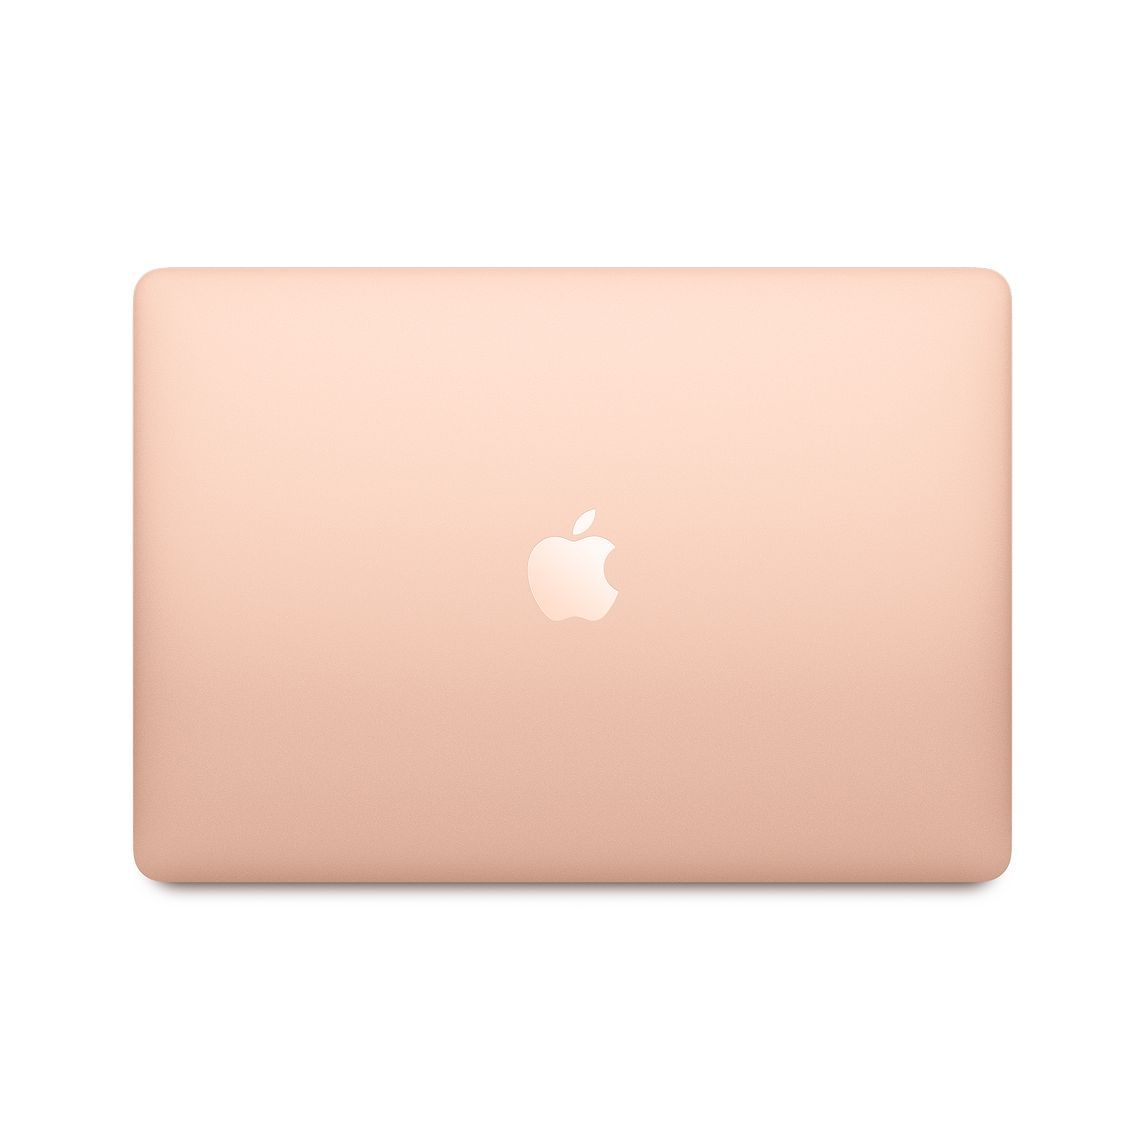 Macbook Air 13 inch Retina - Core i5 - 2018 - Gold